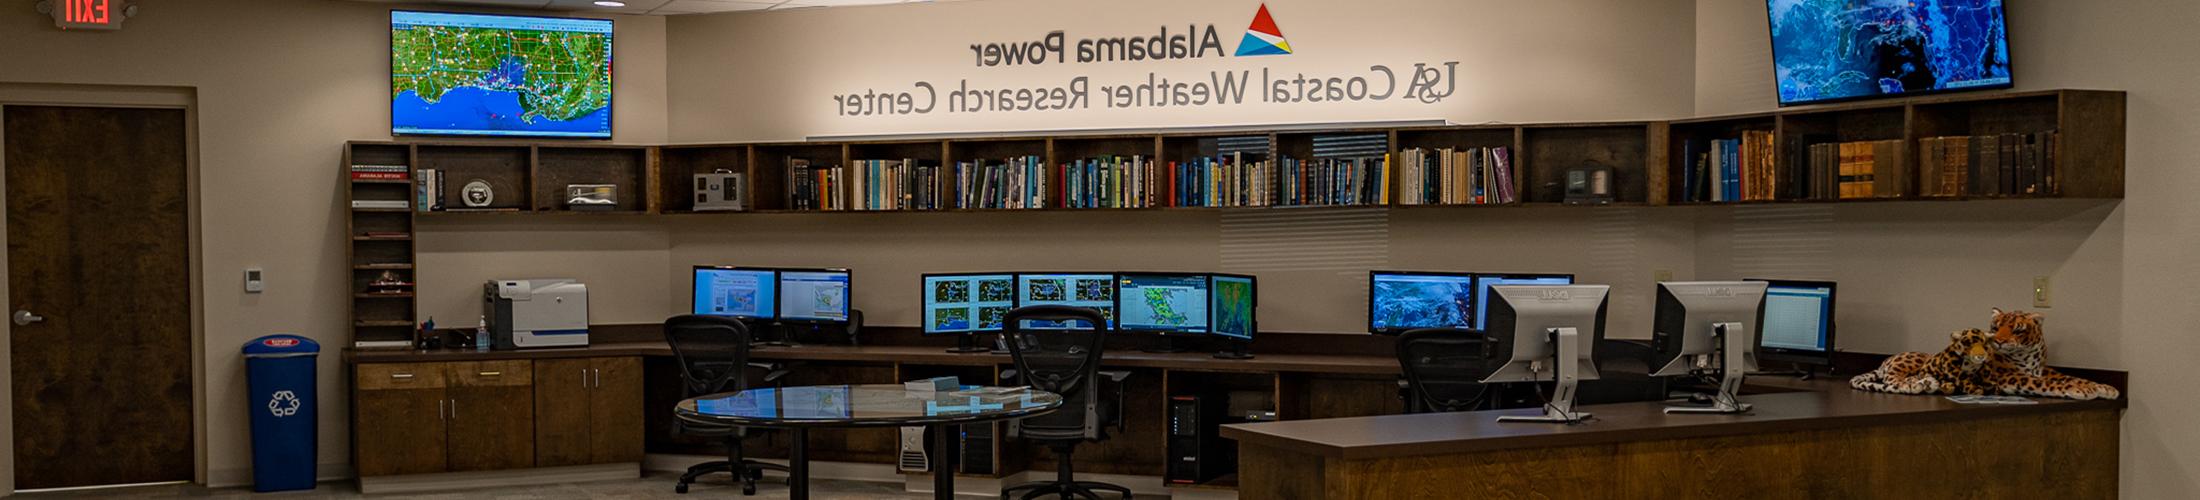 阿拉巴马州电力-美国海岸天气研究中心办公室显示监视器.